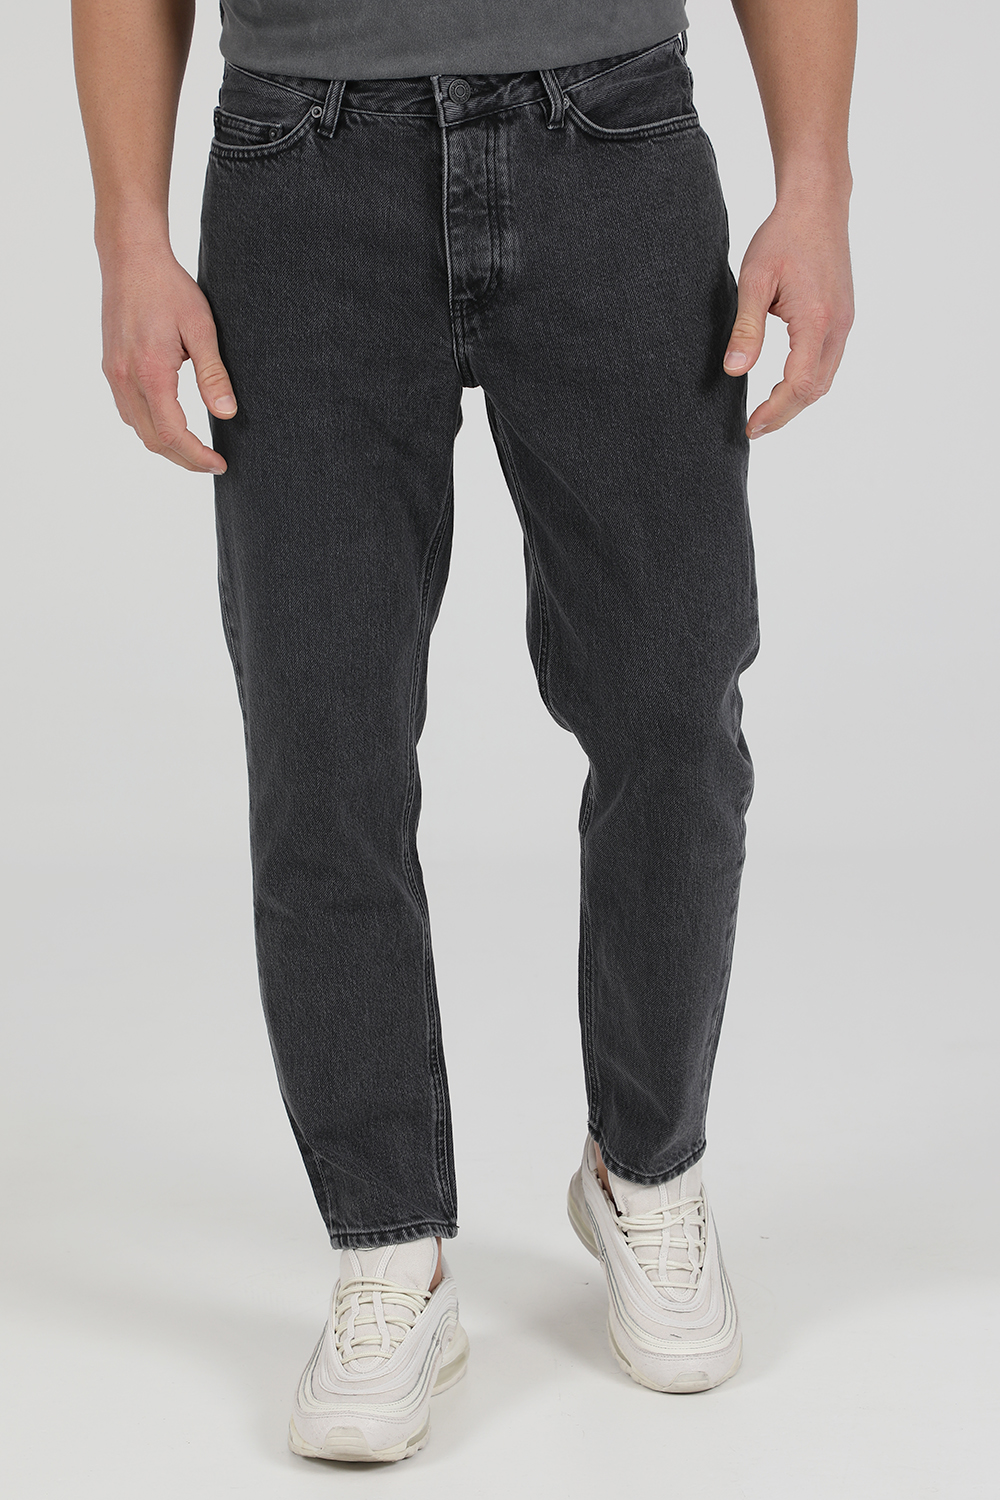 AMERICAN VINTAGE – Ανδρικό jean παντελόνι AMERICAN VINTAGE MYOP61 γκρι 1821893.0-0088